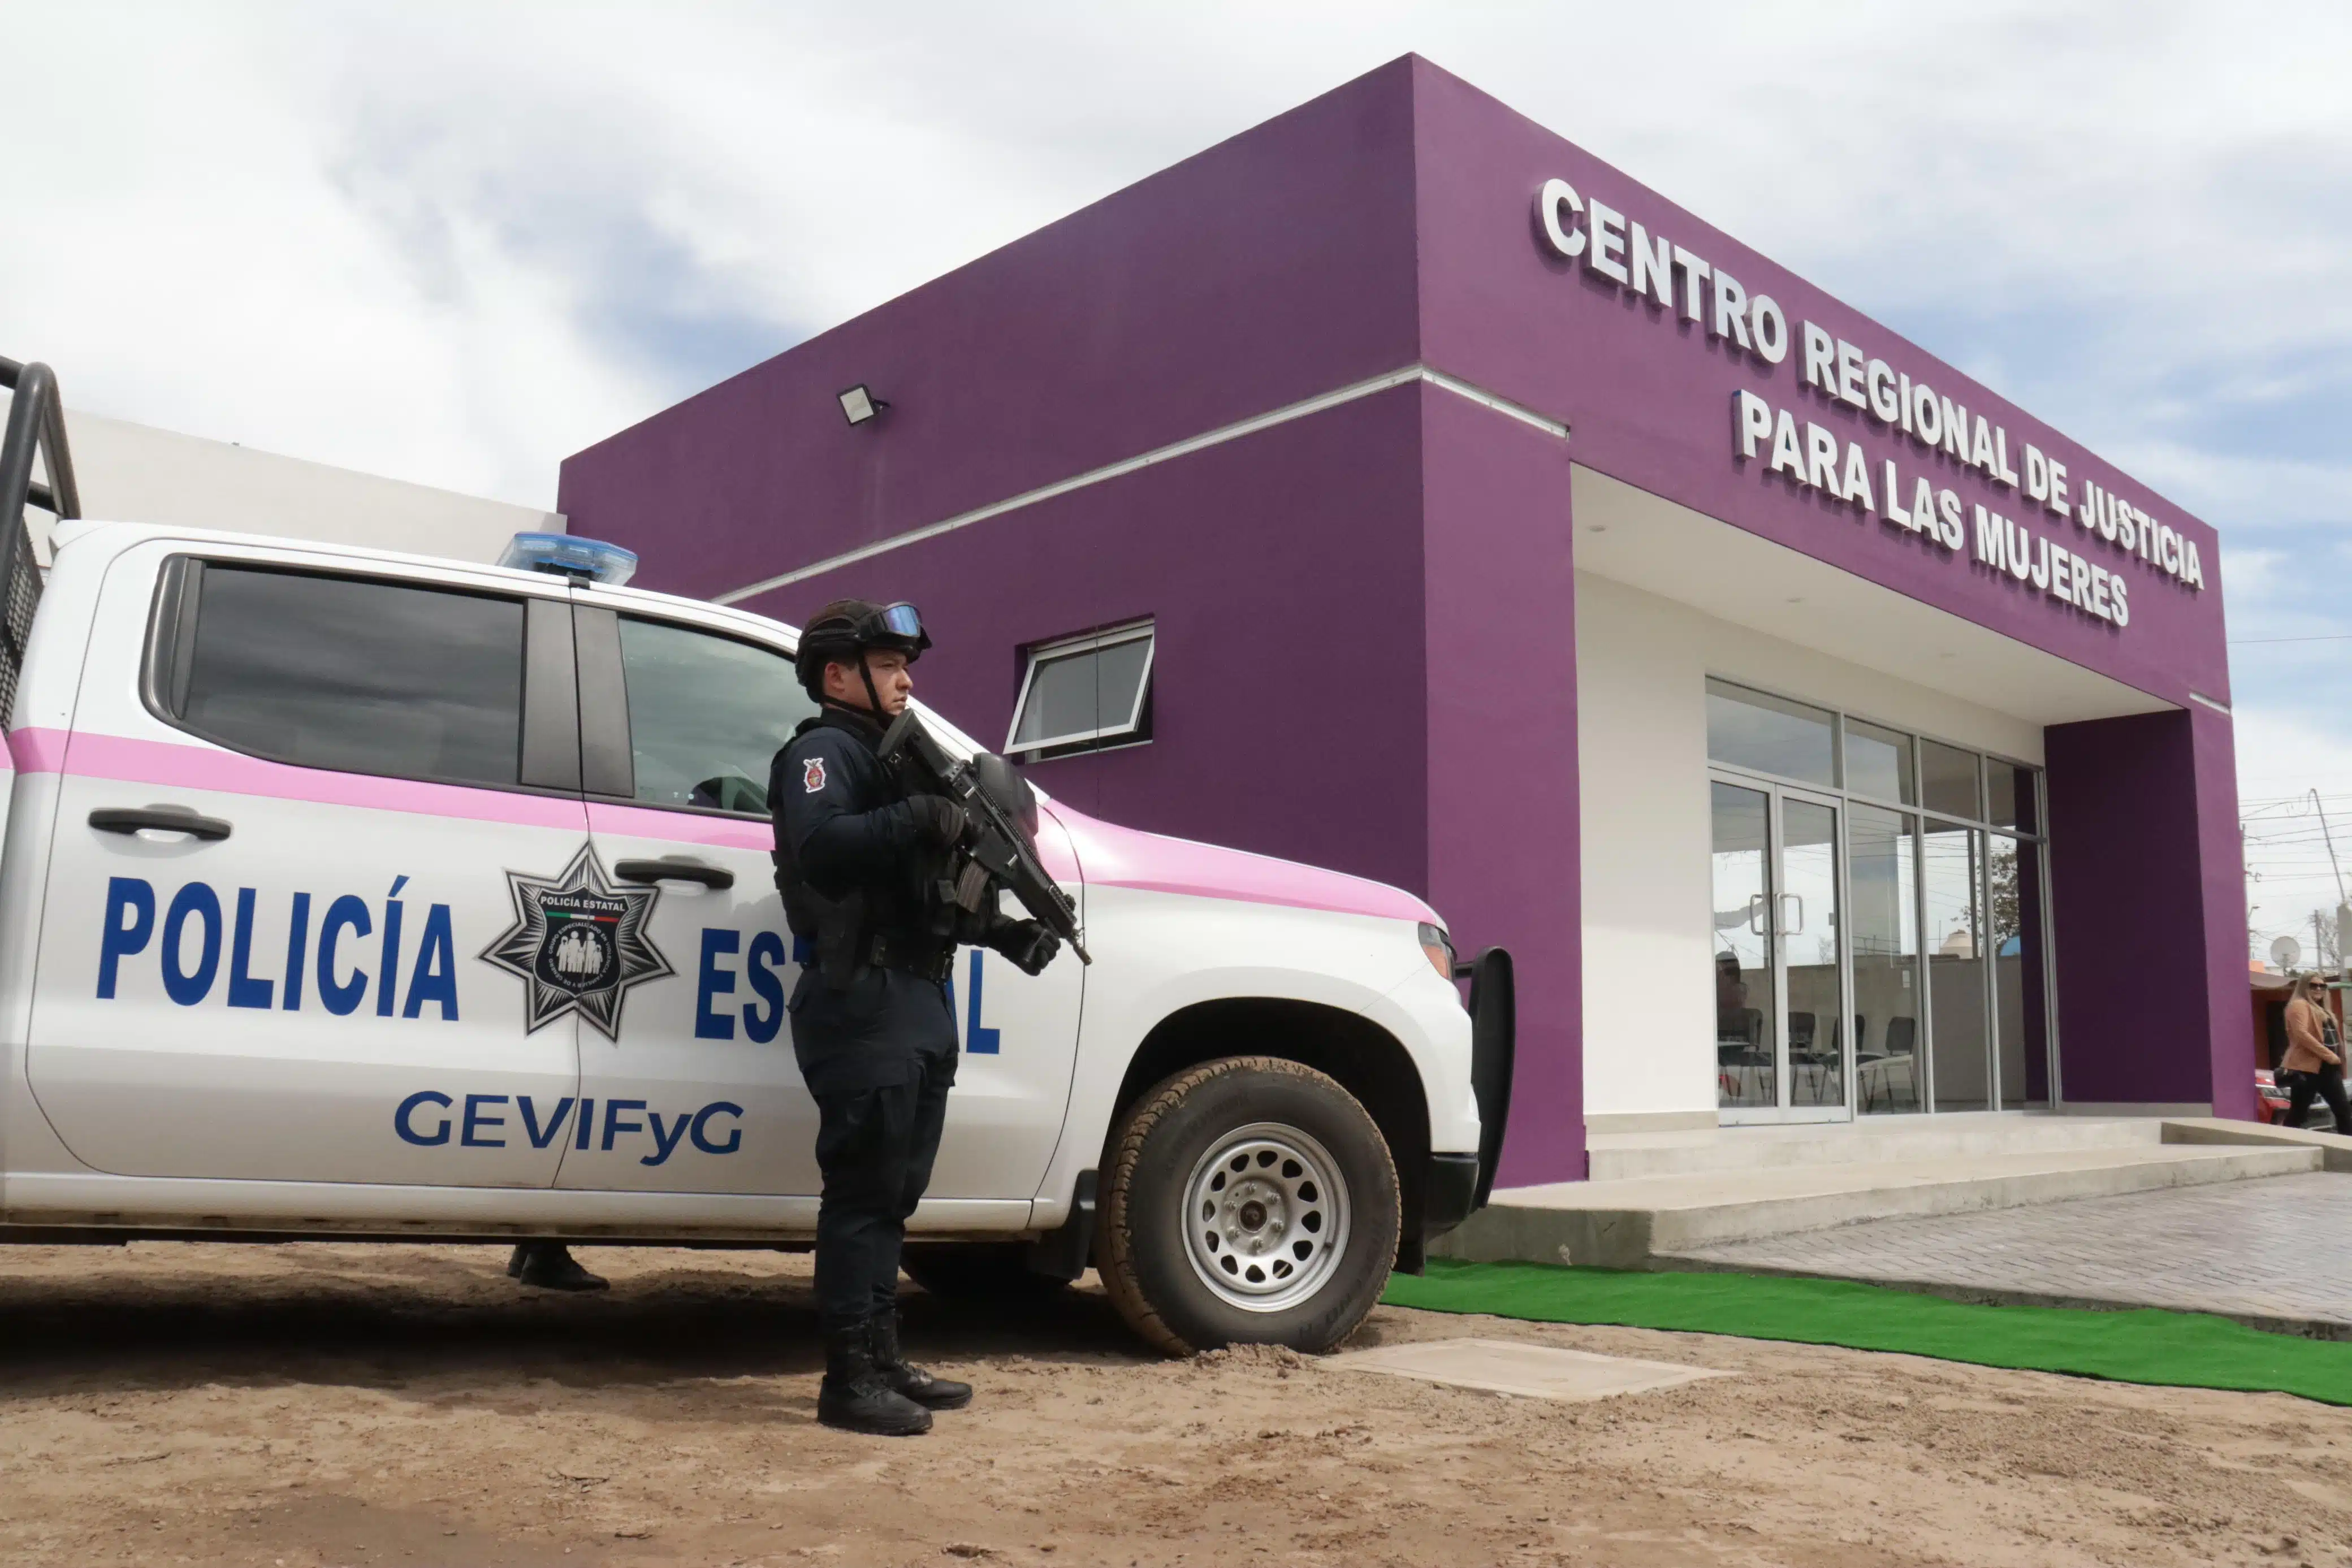 Patrulla de la Policía Estatal afuera del Centro Regional de Justicia para las Mujeres Zona Norte